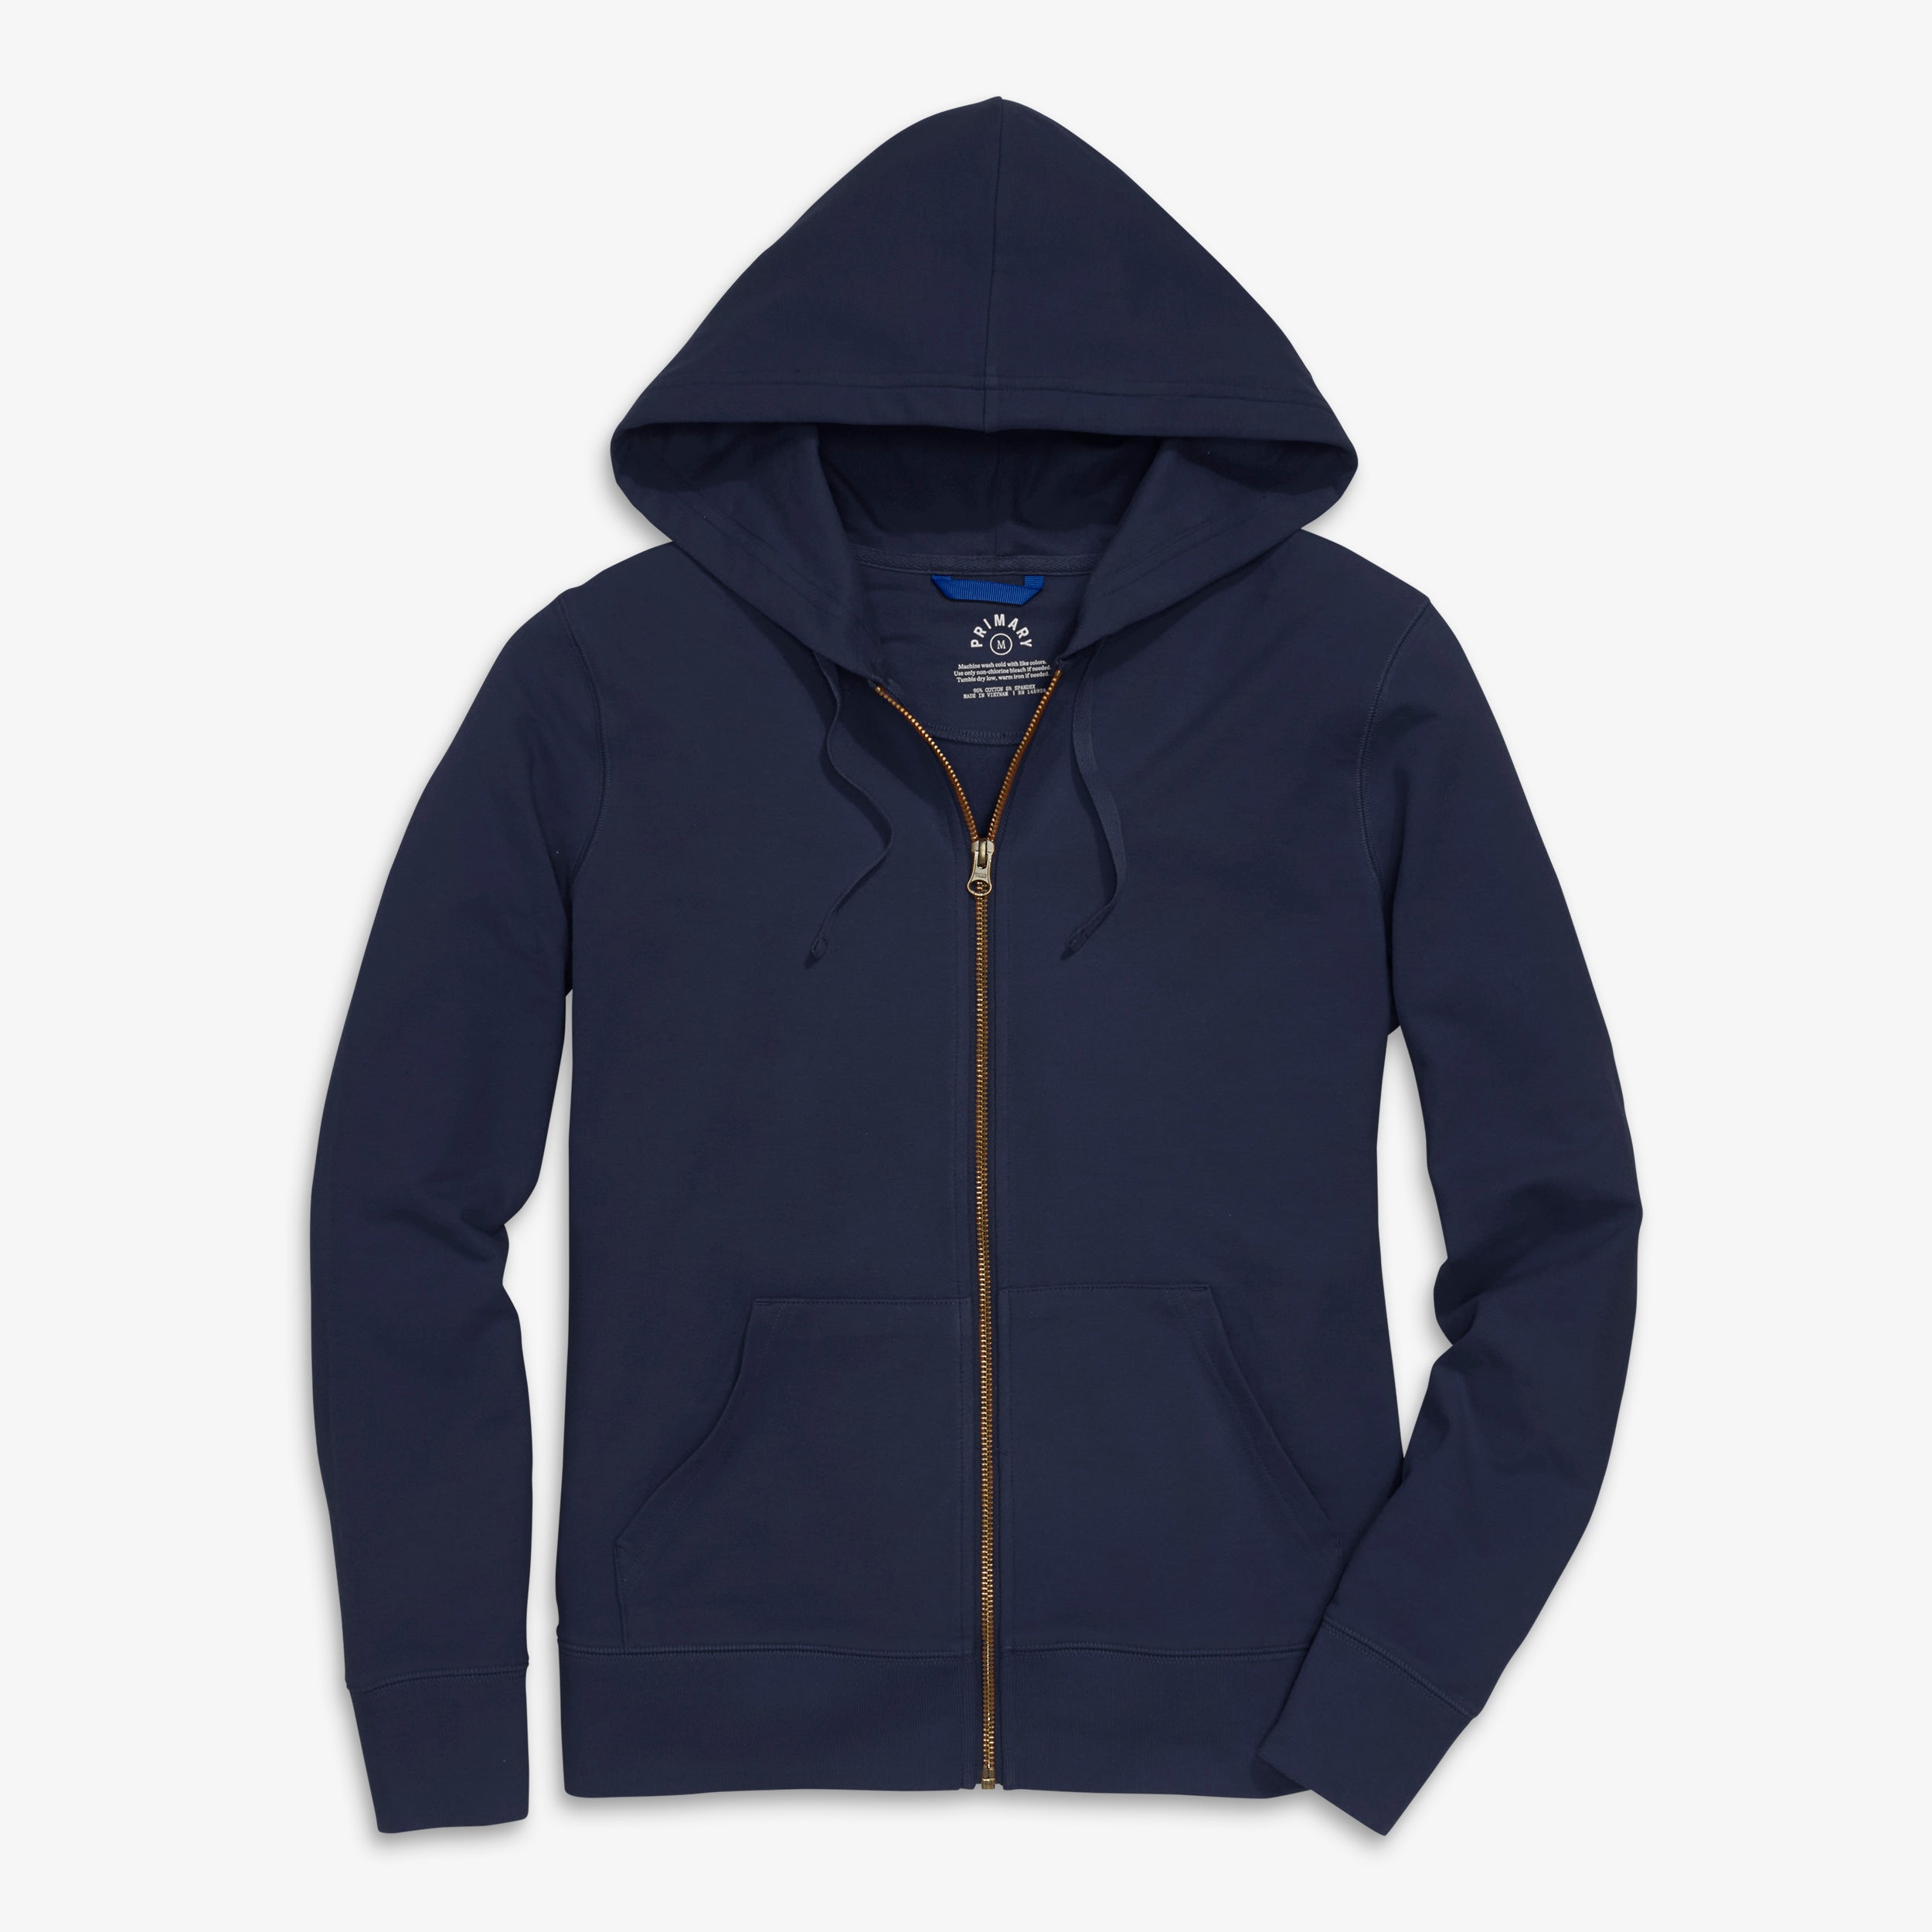 Grown-ups slim fit zip hoodie